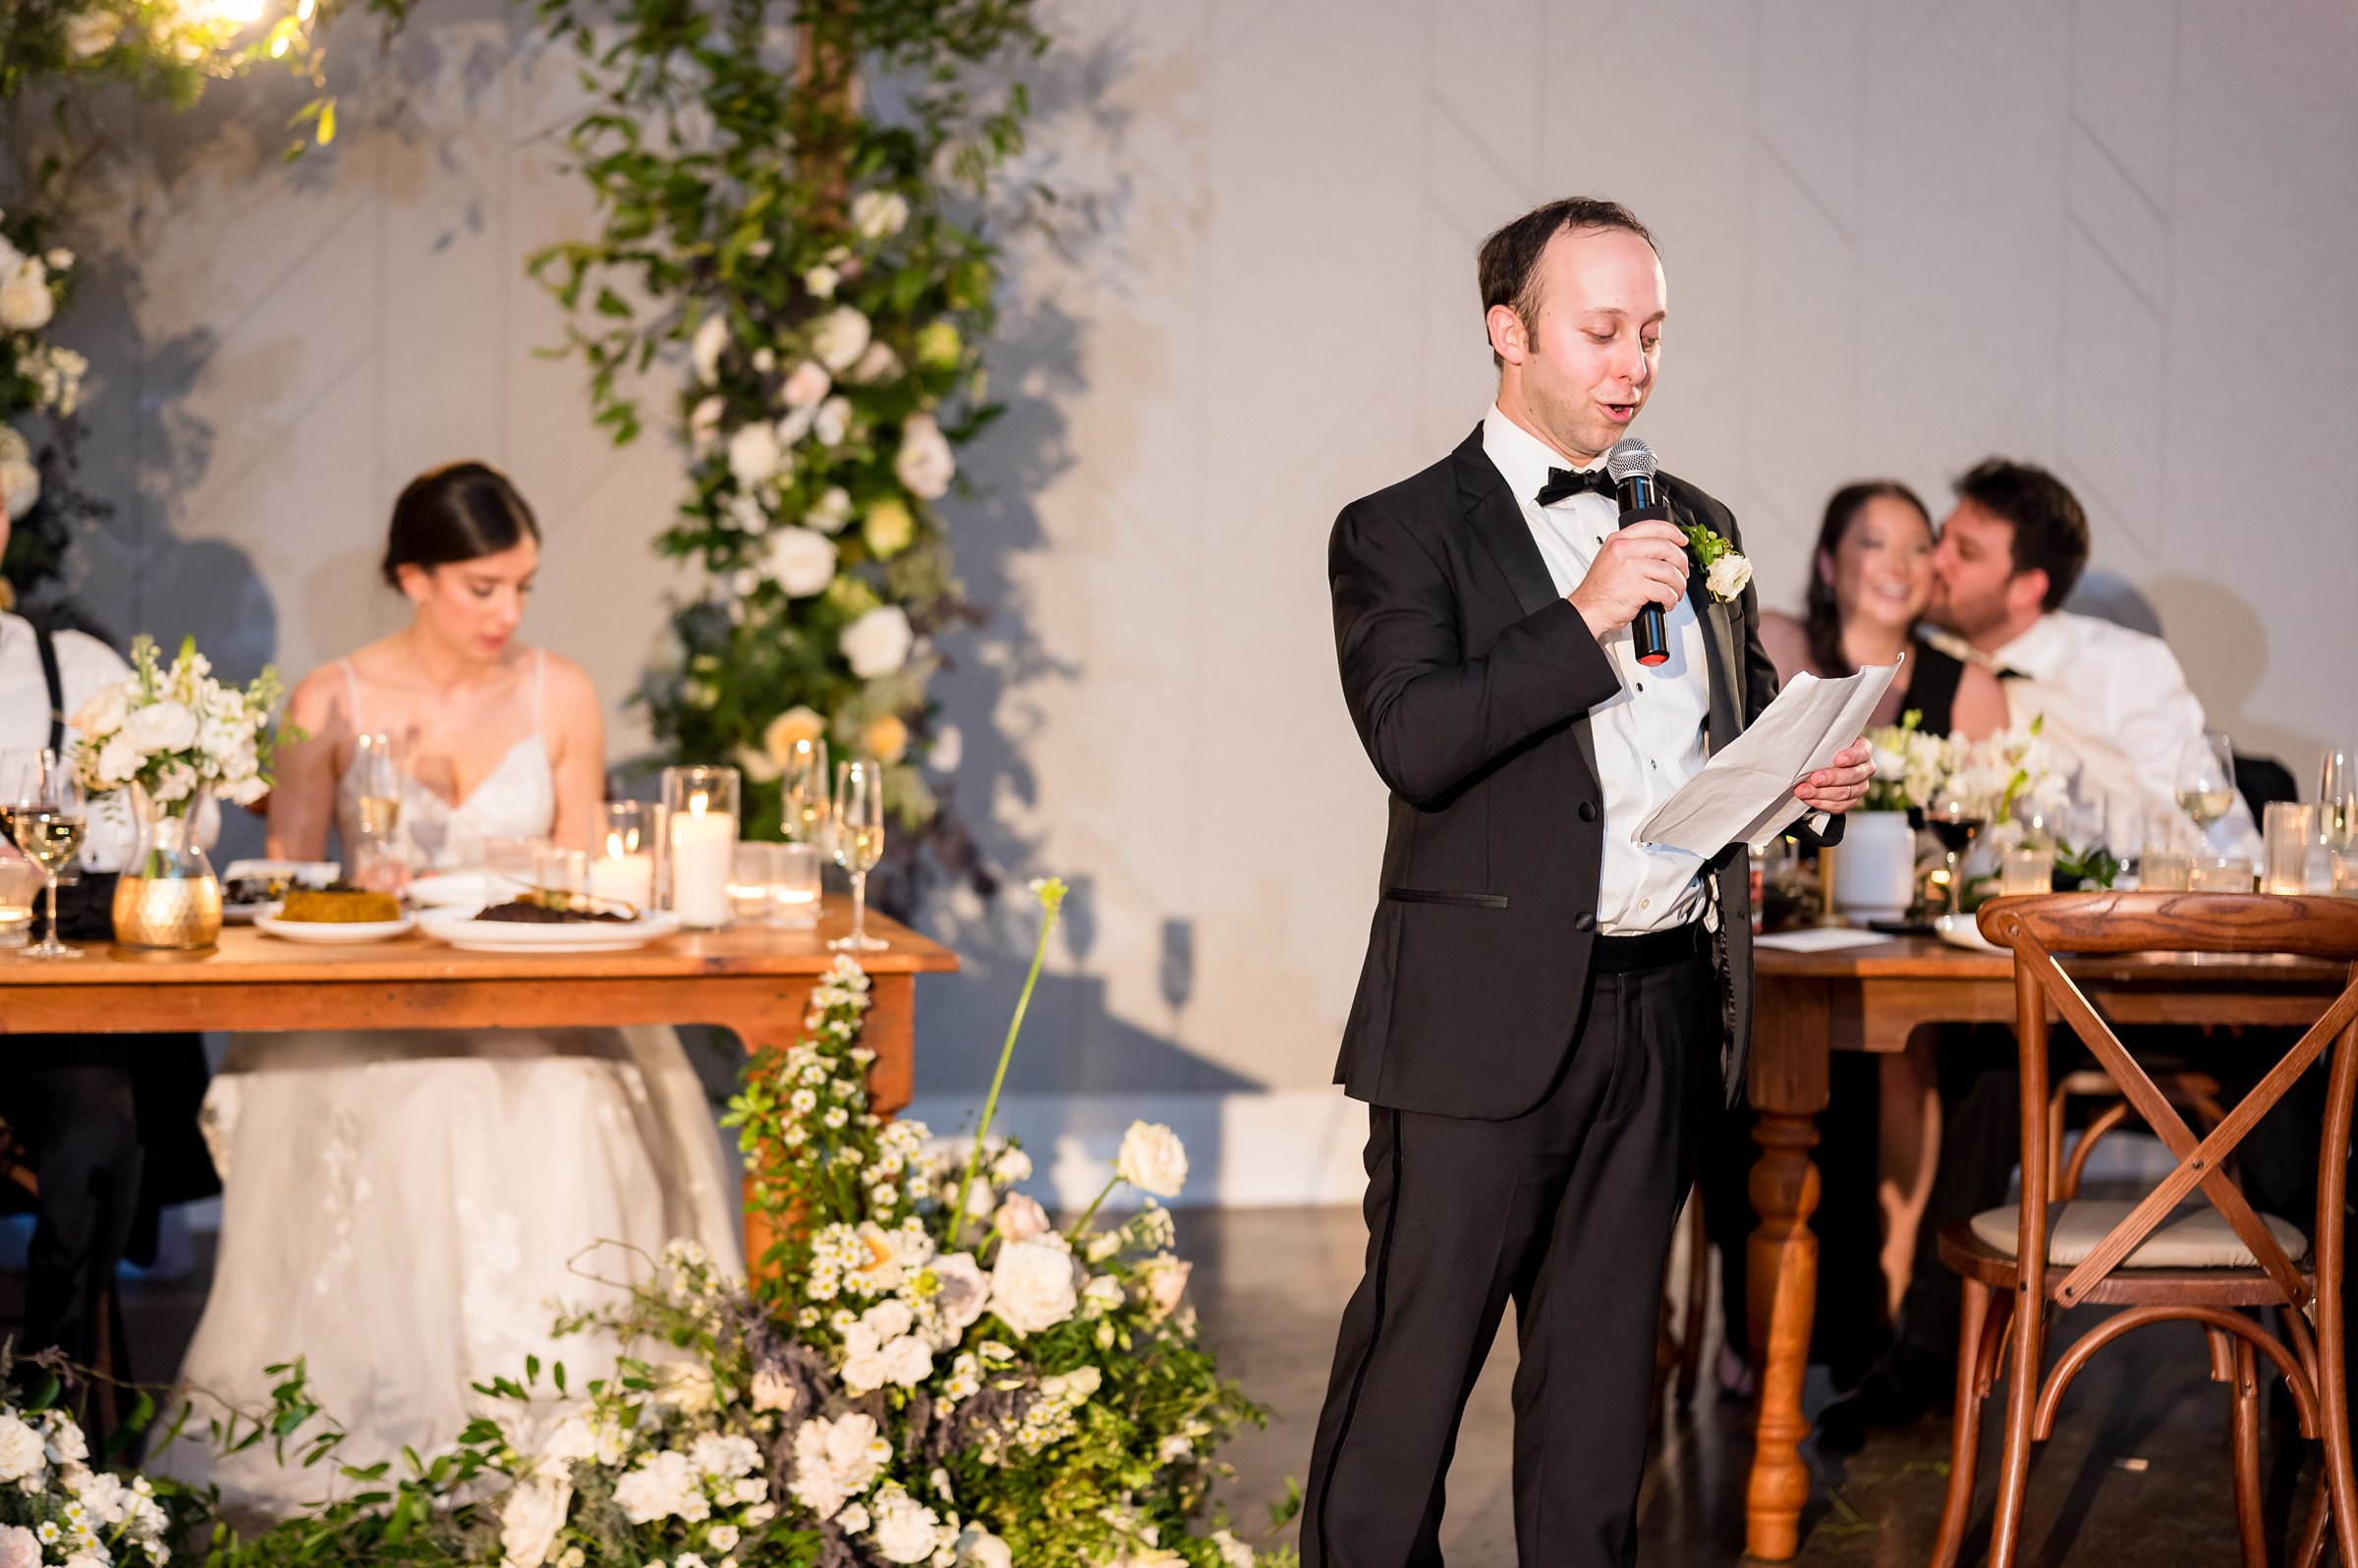 A man in a tuxedo giving a heartfelt speech at a Lilah wedding reception.